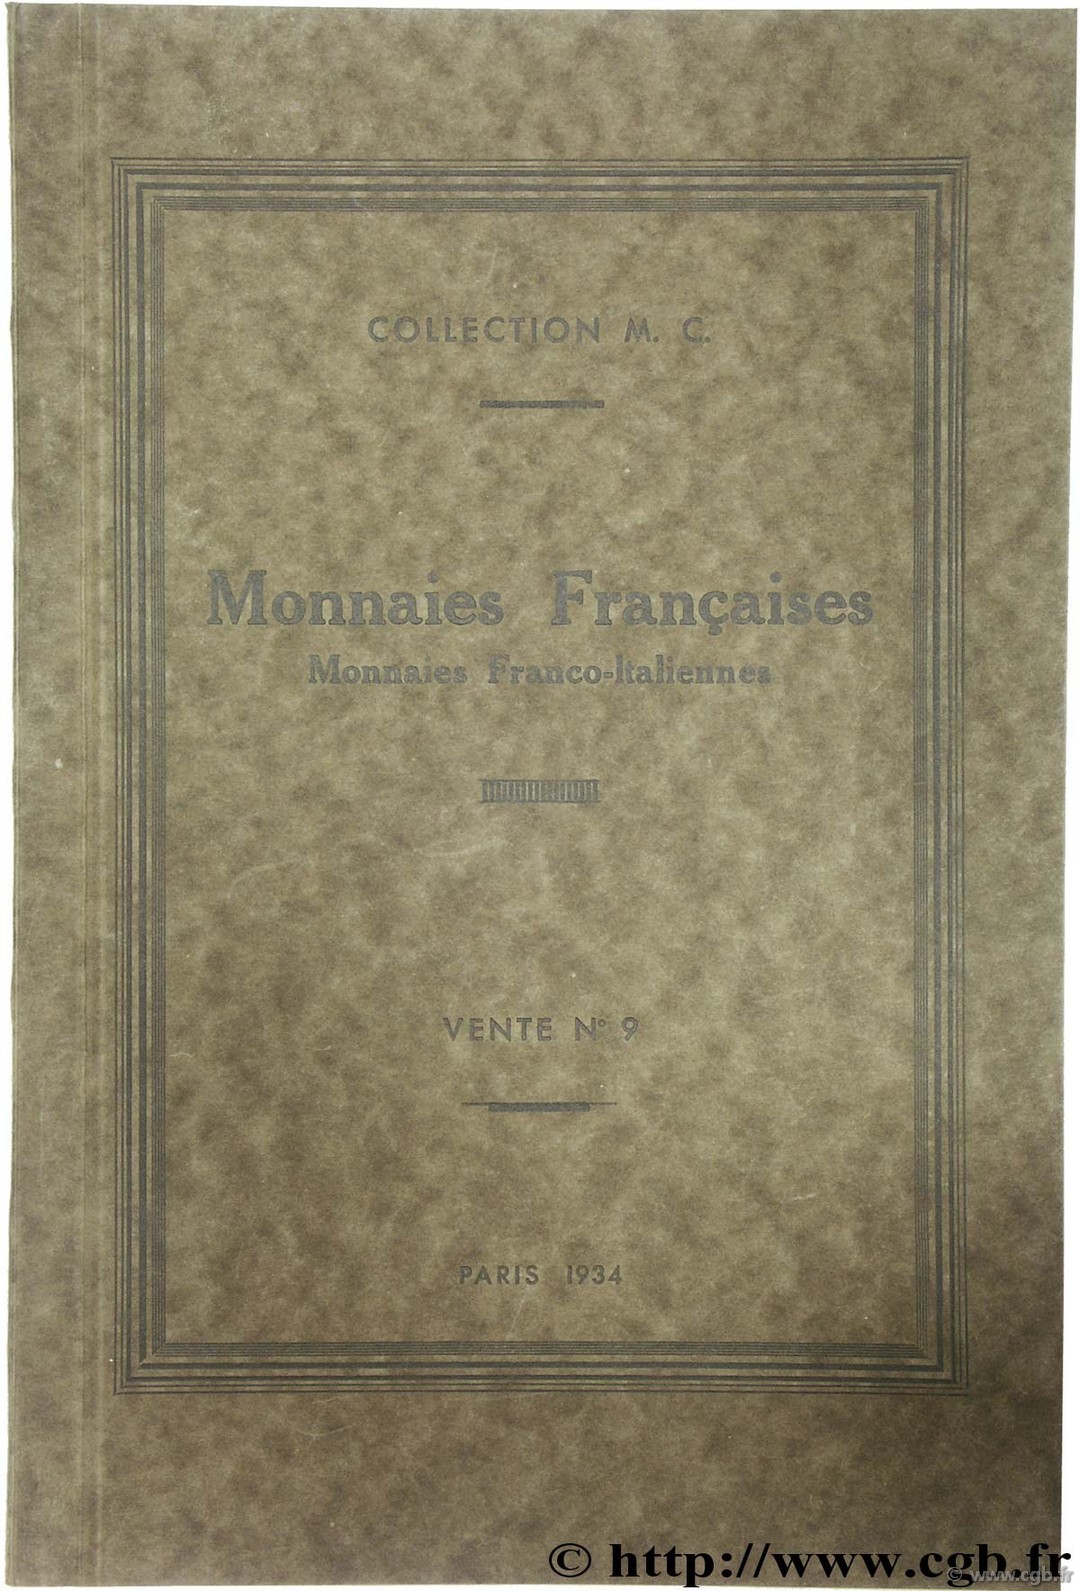 Monnaies Françaises, monnaies franco-italiennes - Collection M. C. RATTO M.